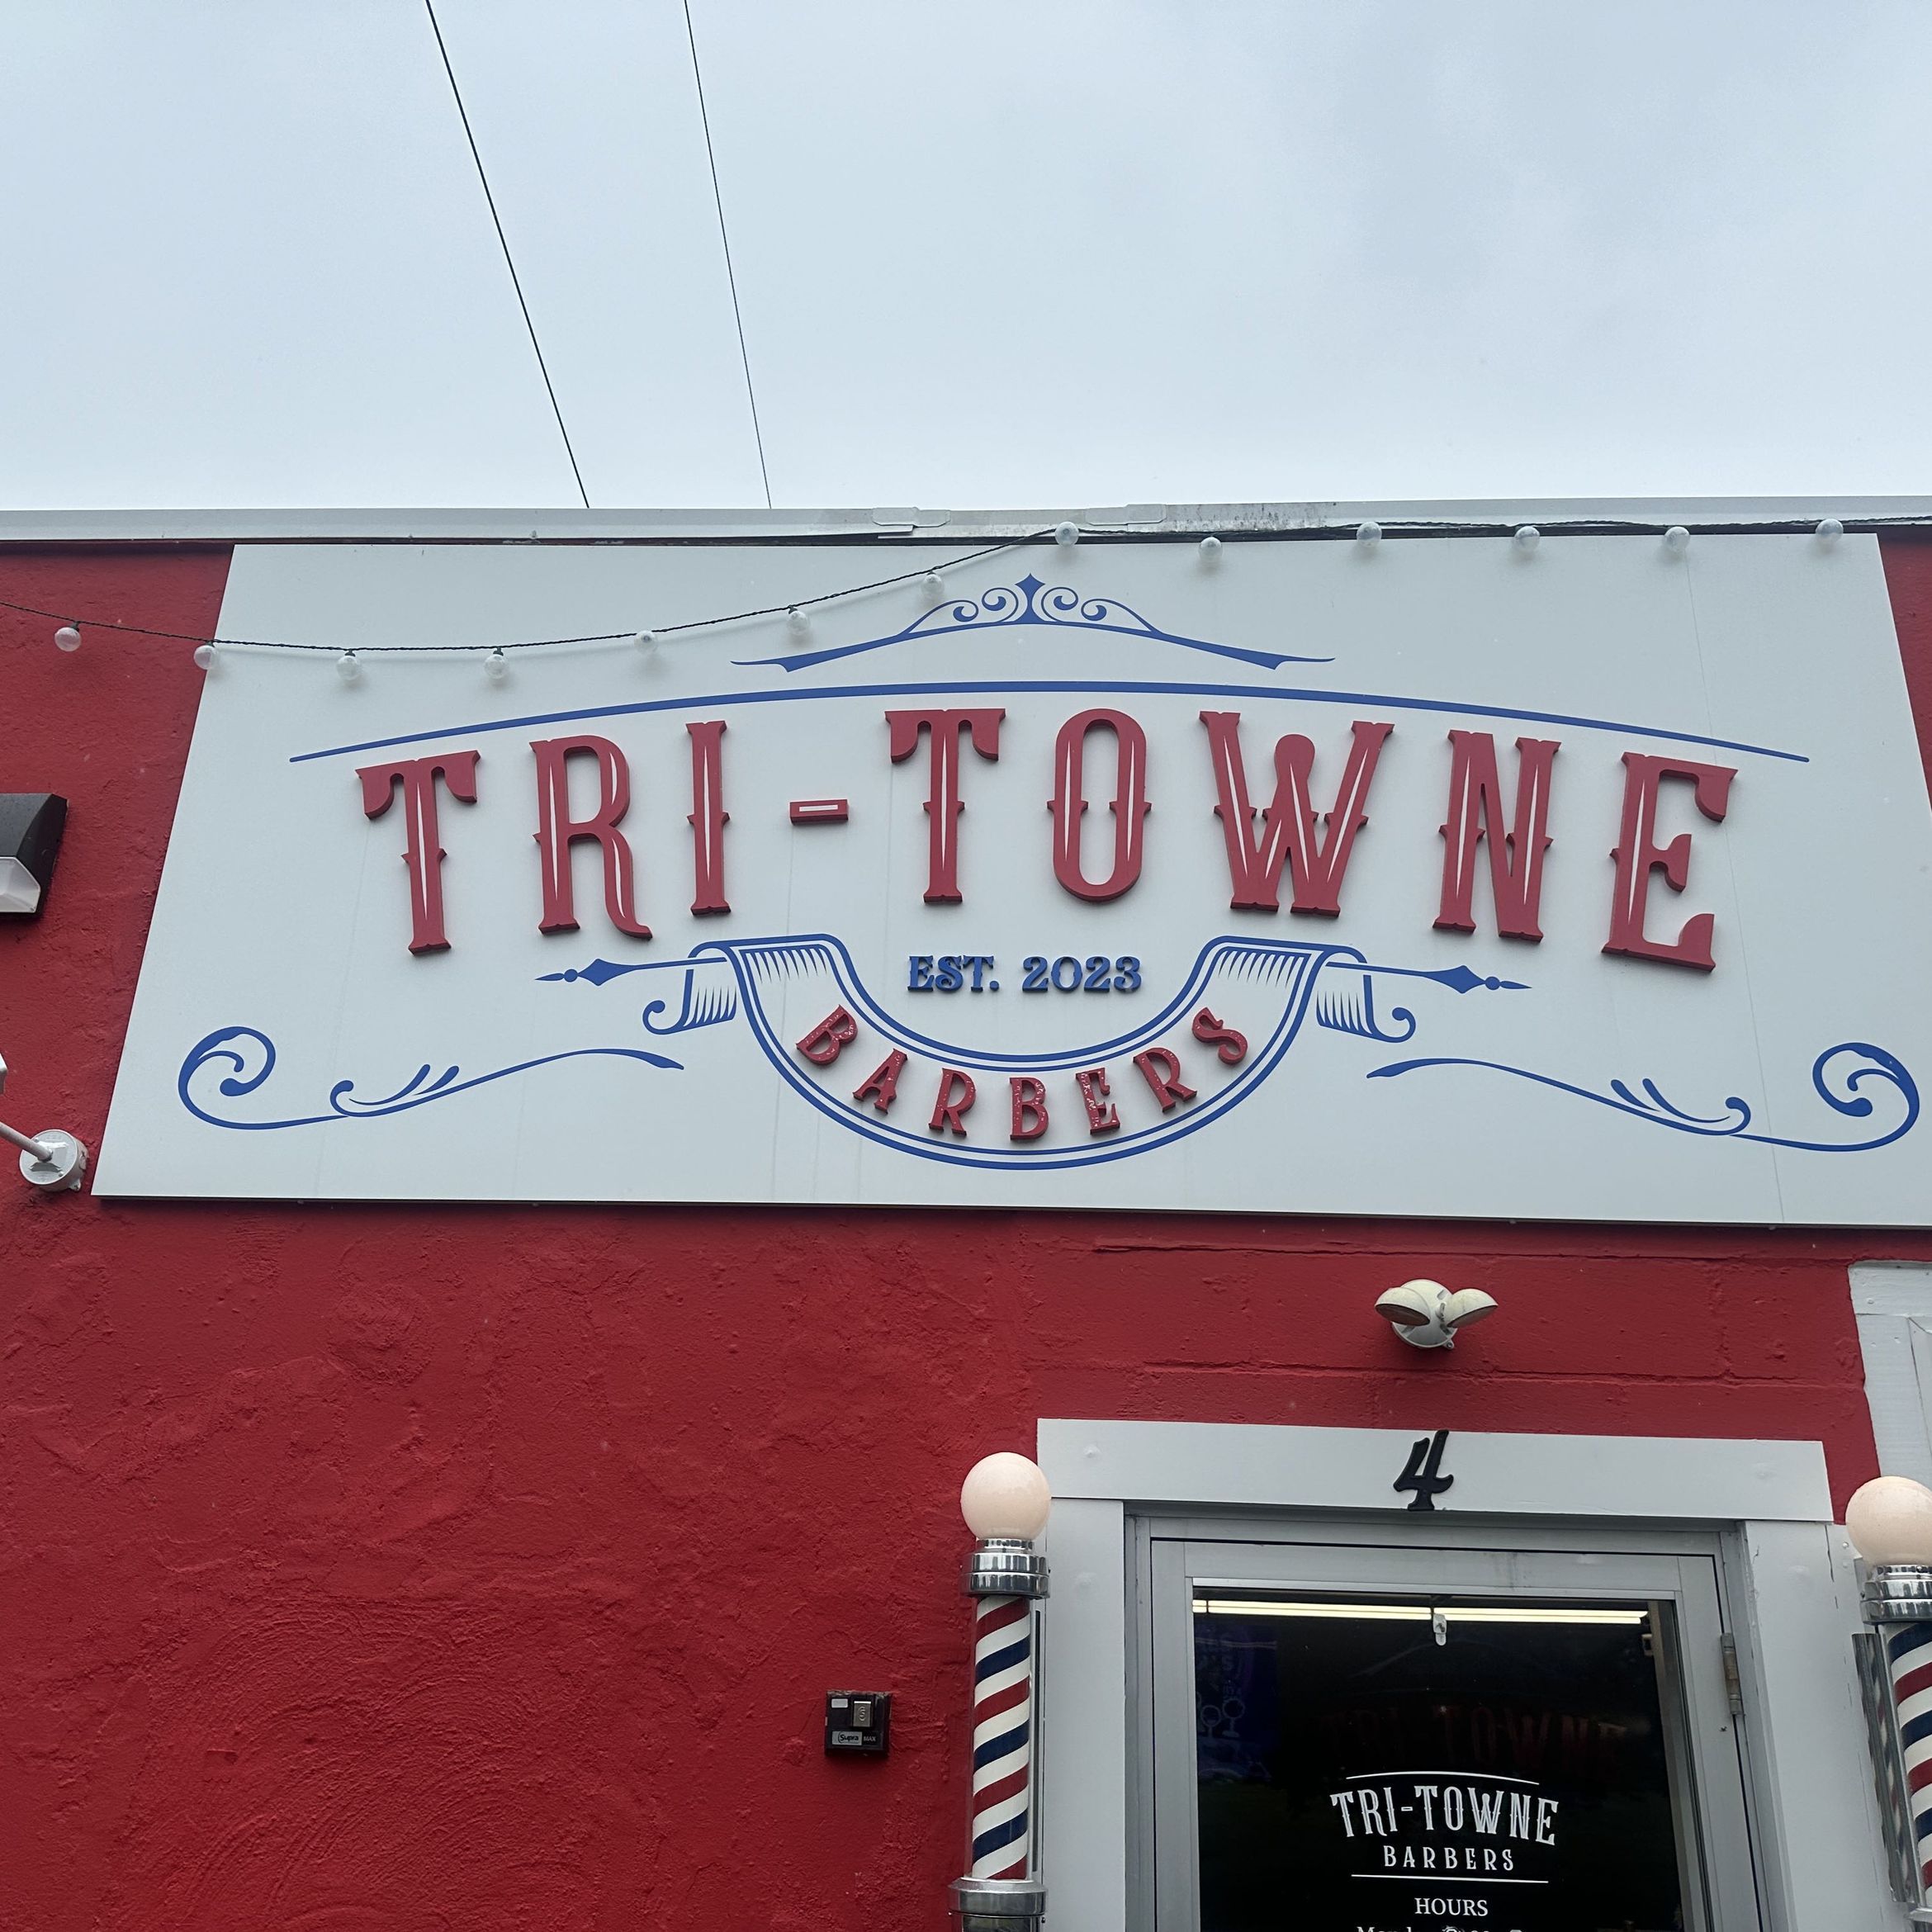 Tri - Towne Barbers, 4 plain st, West Bridgewater, 02324